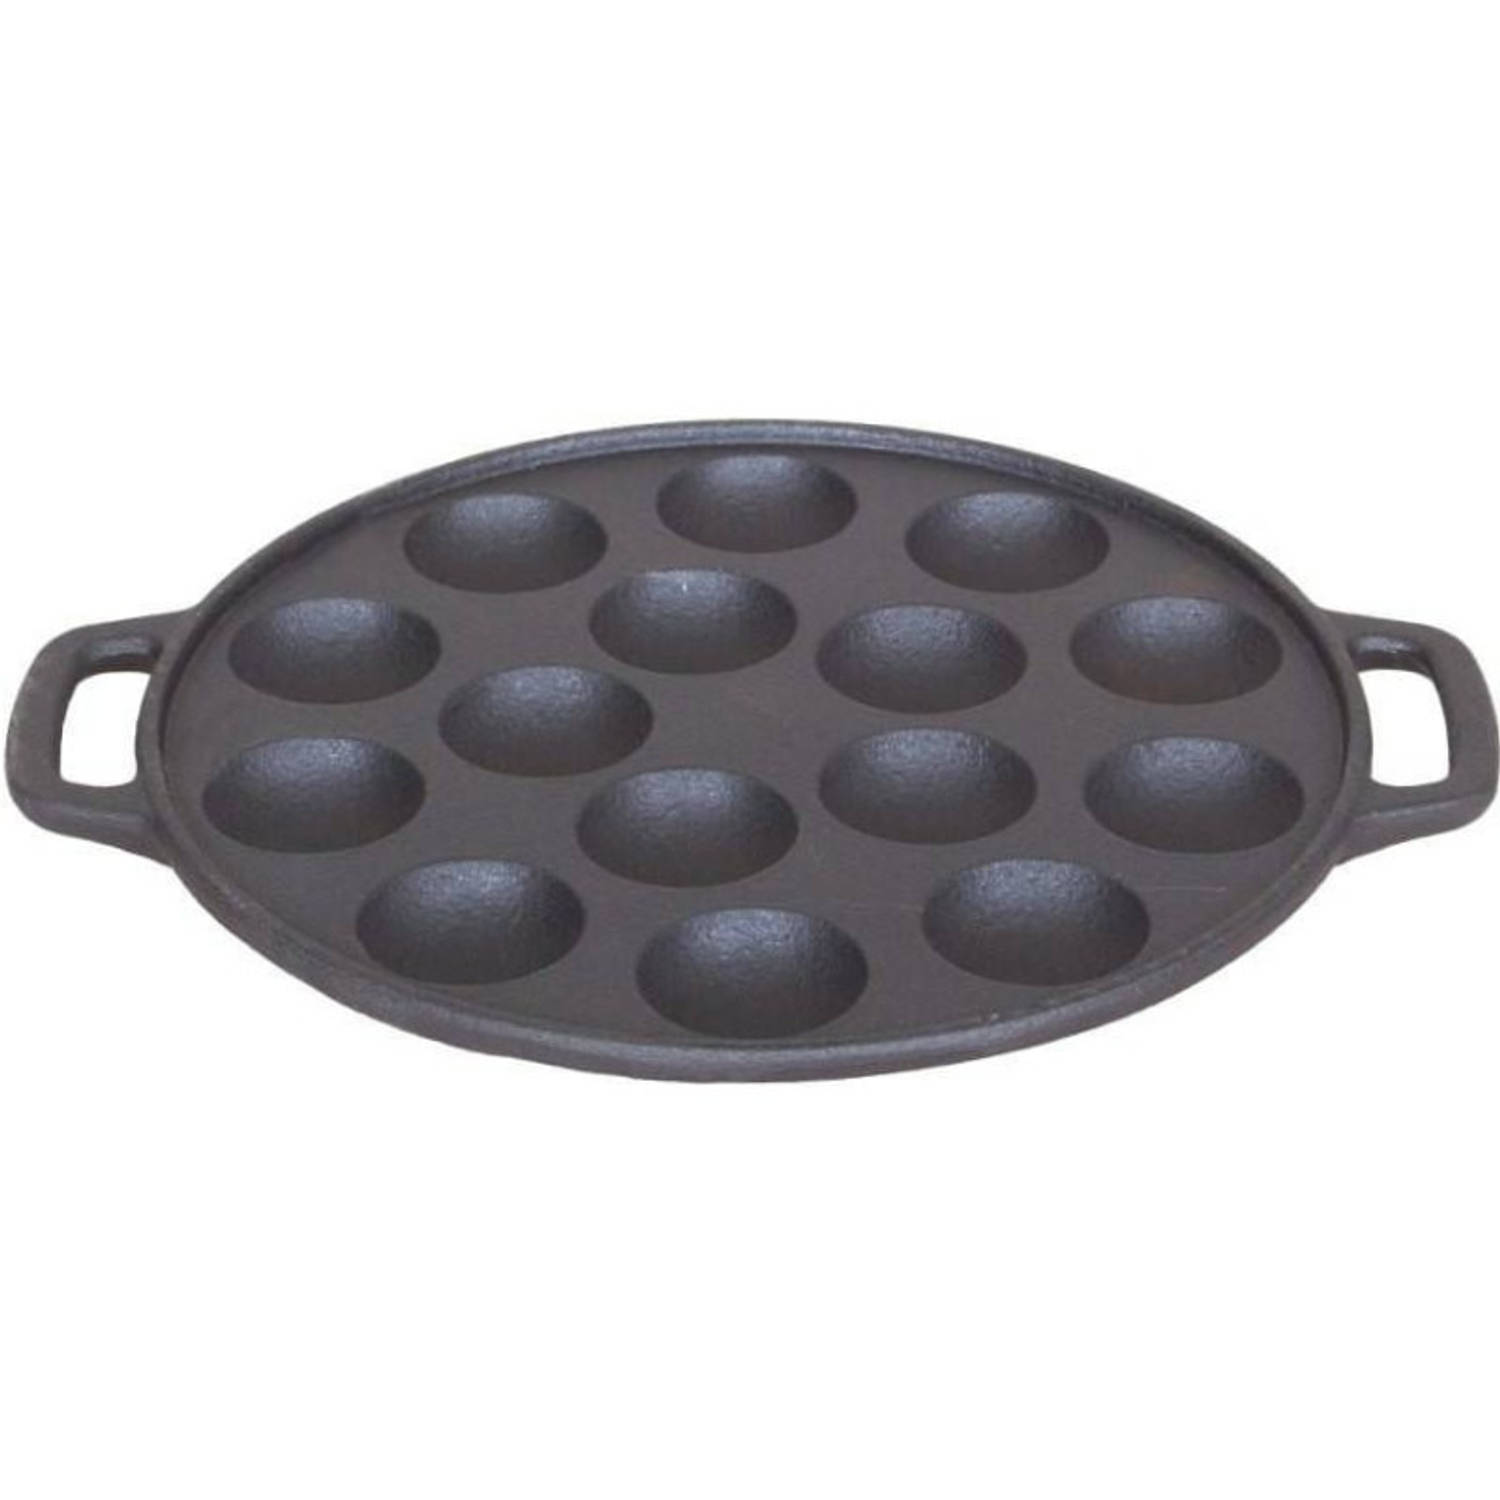 Poffertjes koekenpan-pan voor 15 poffertjes 25 cm Koekenpannen